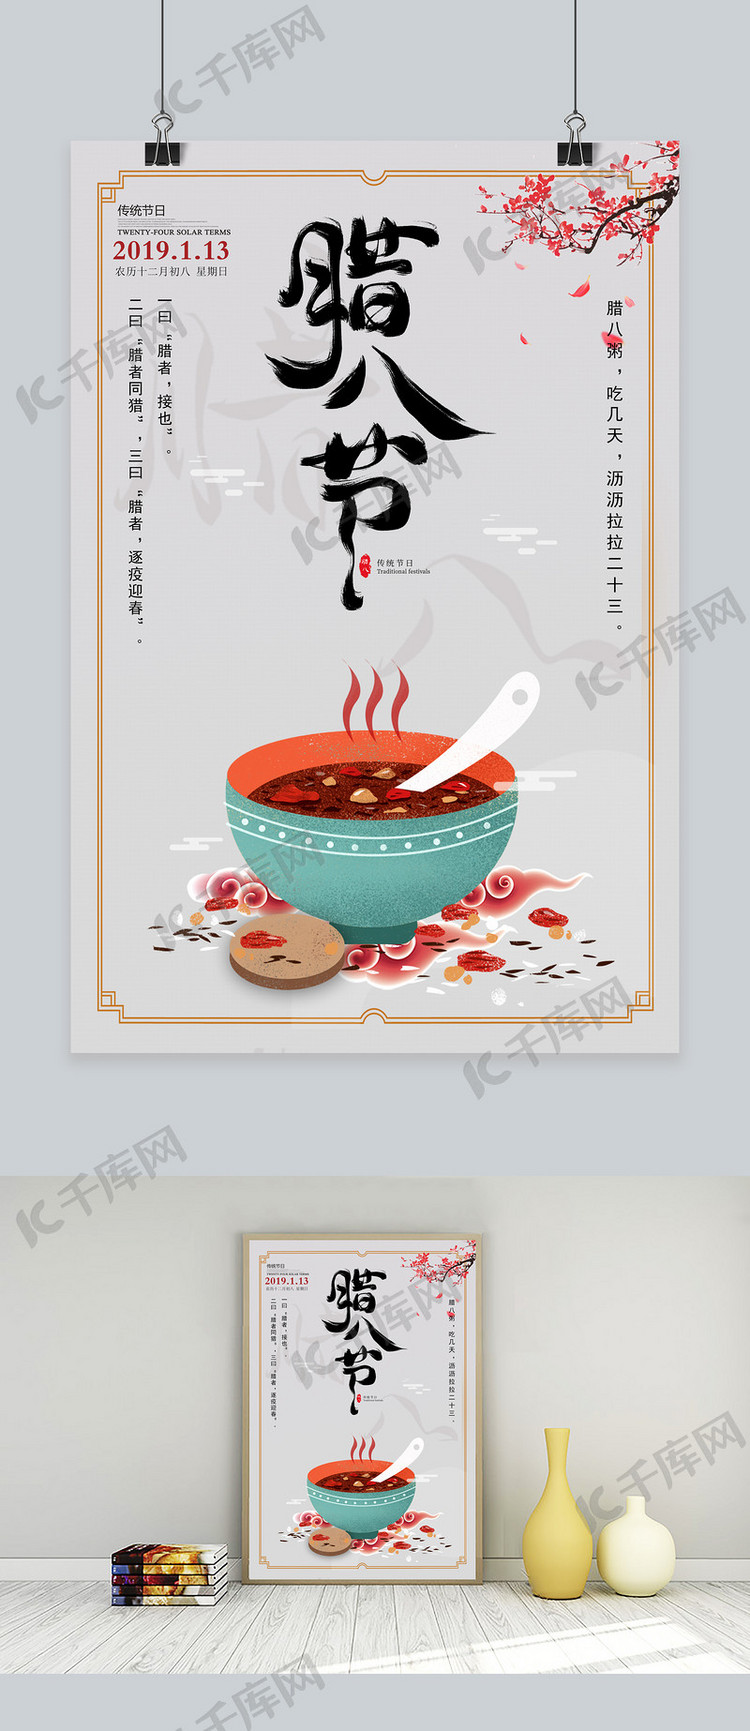 中国传统节日之腊八节海报